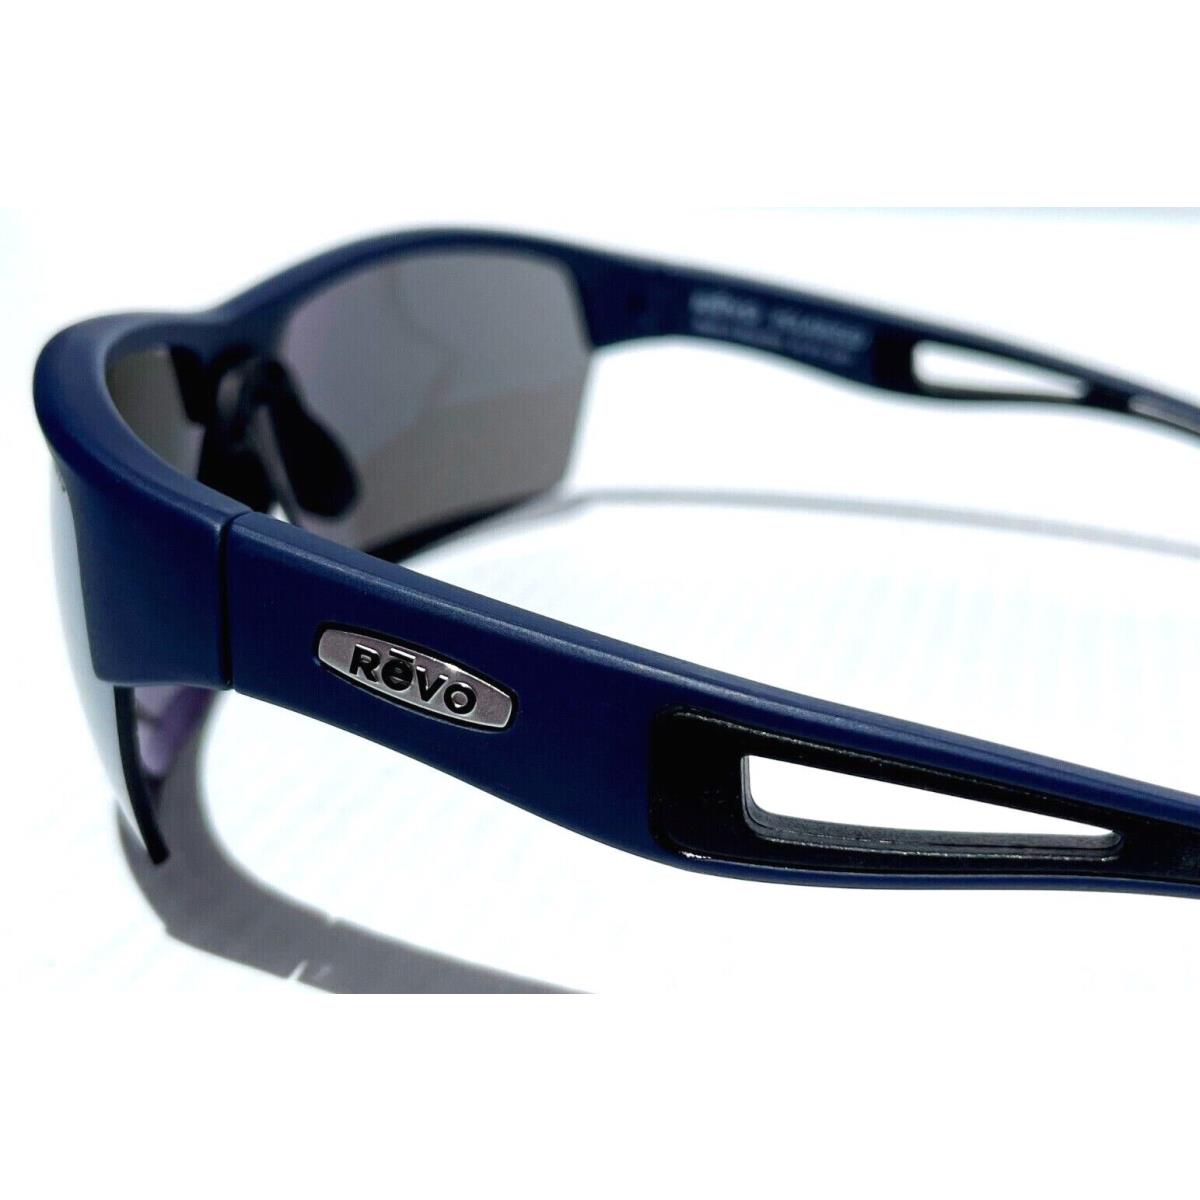 Revo sunglasses JETT - Navy Frame, Gray Lens 2